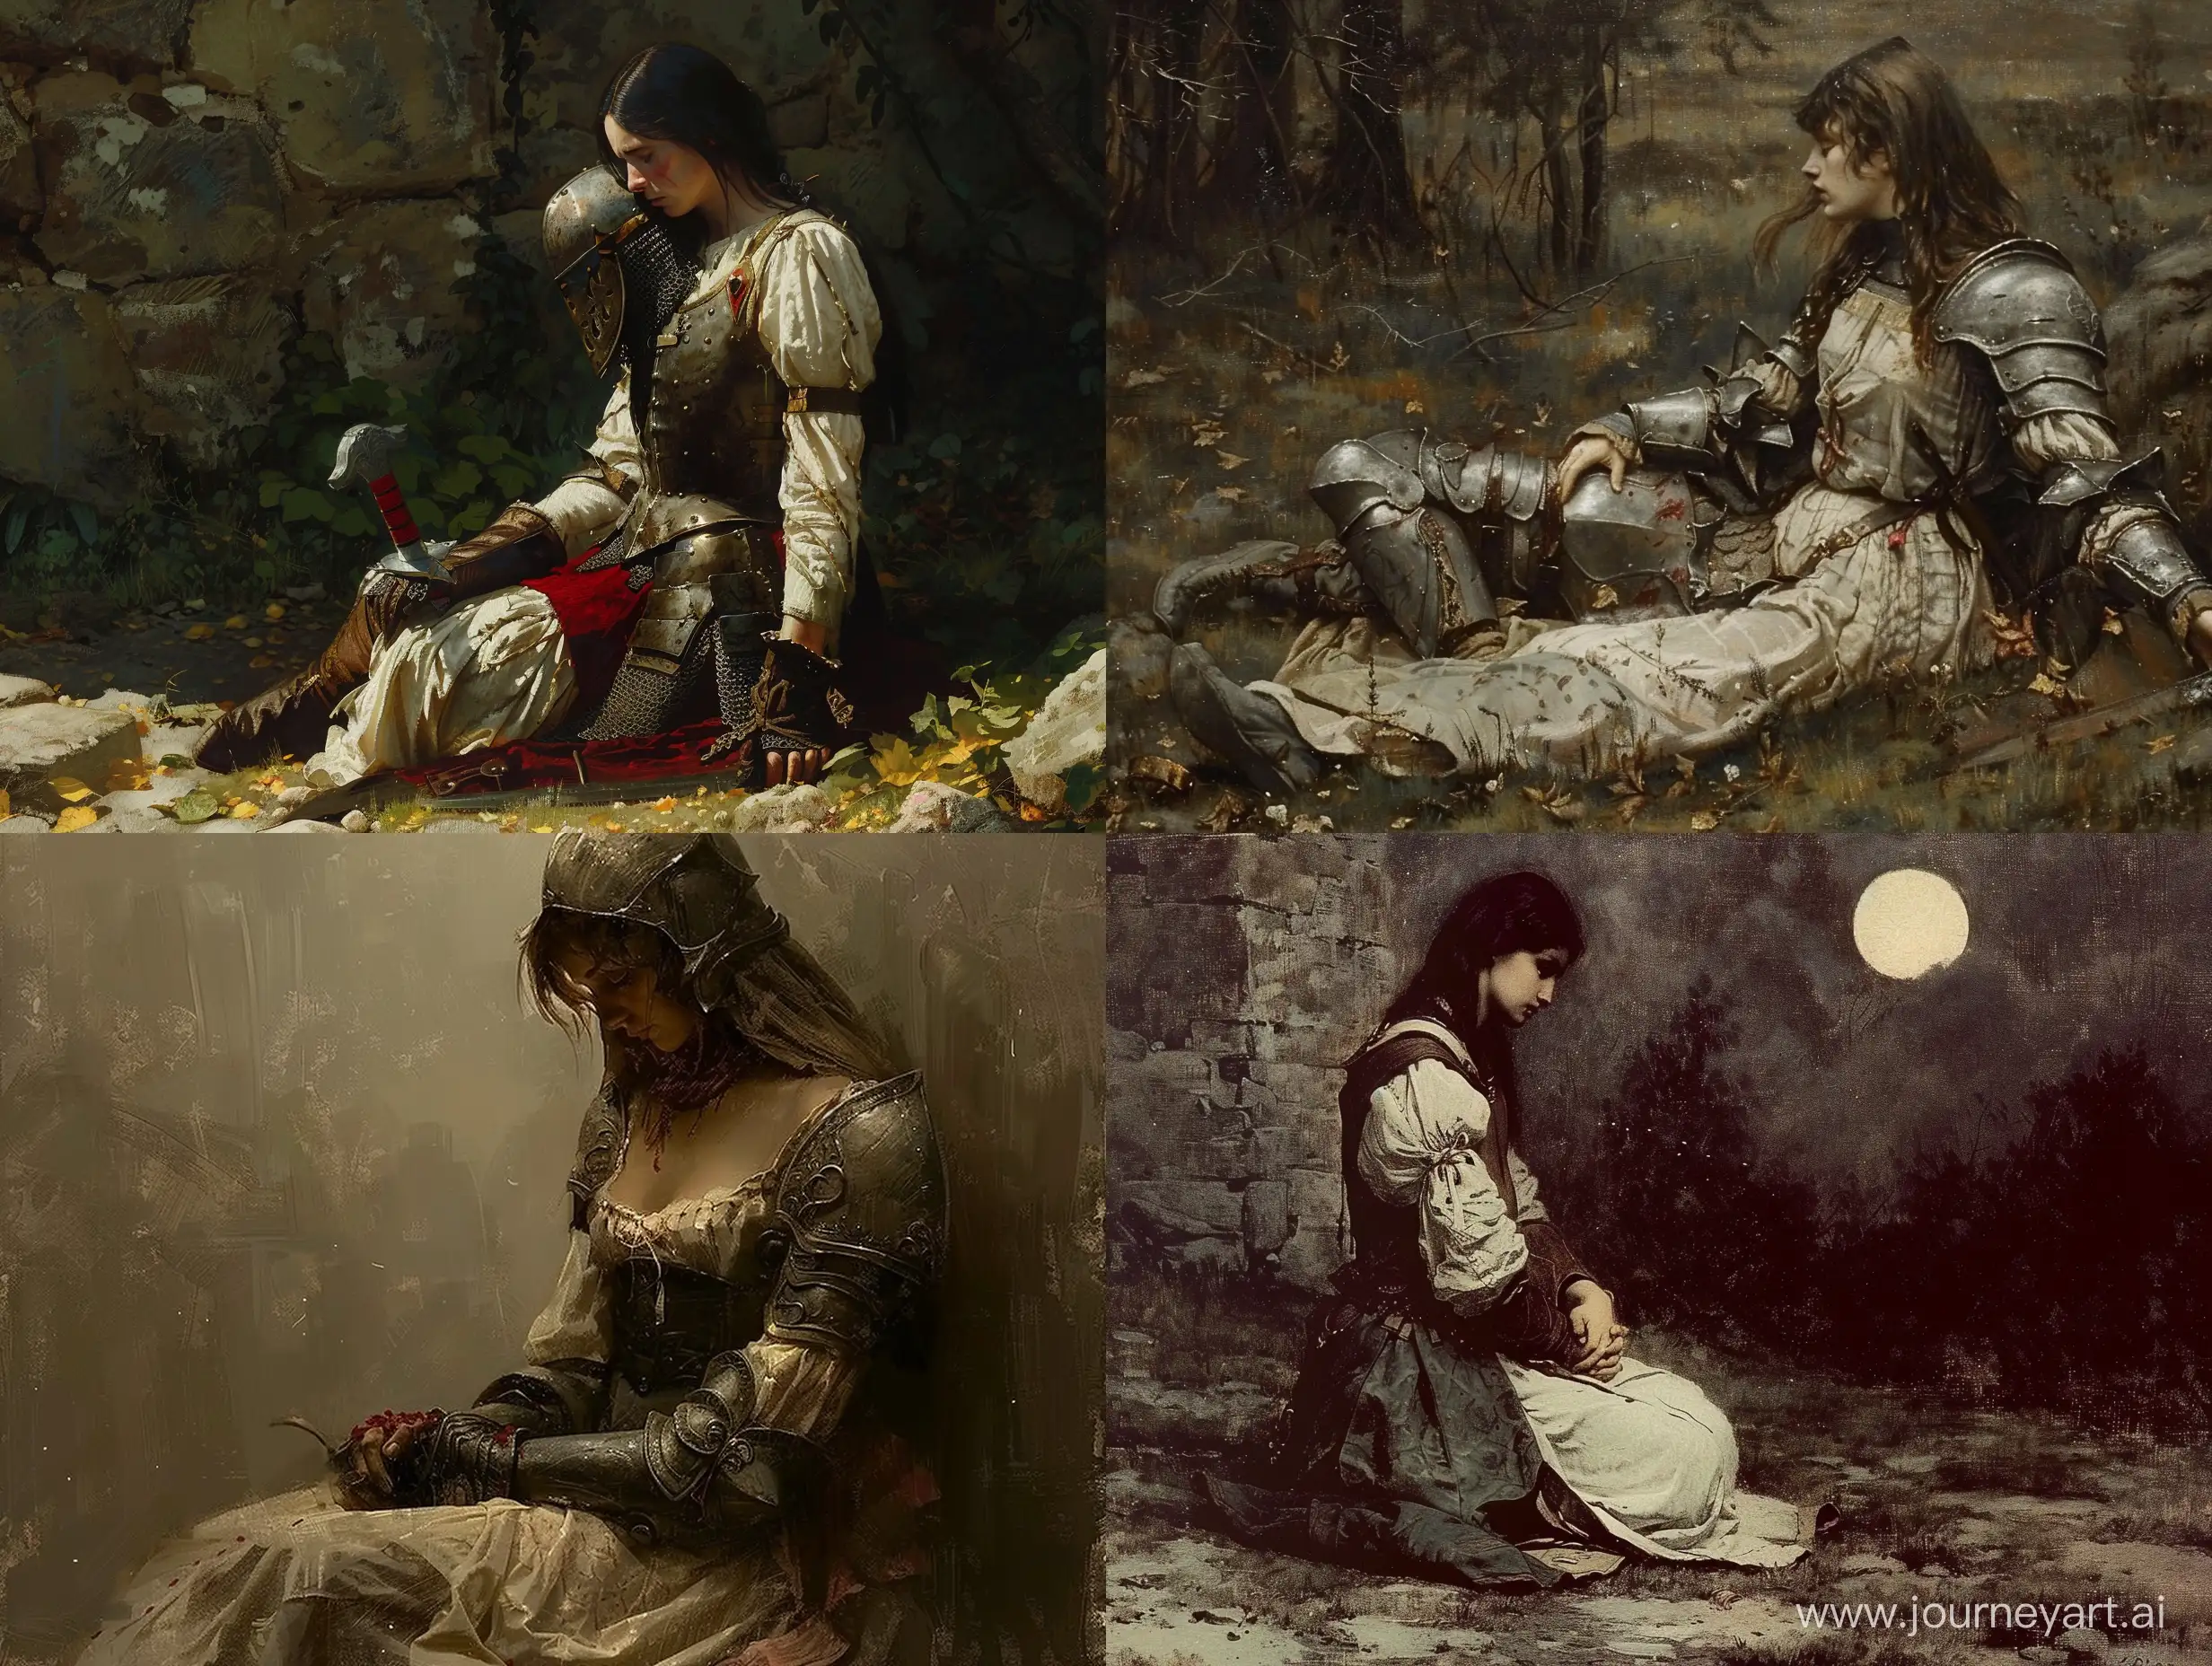 Средневековая дама сидит и переживает о том, что её суженный-рыцарь погиб в бою